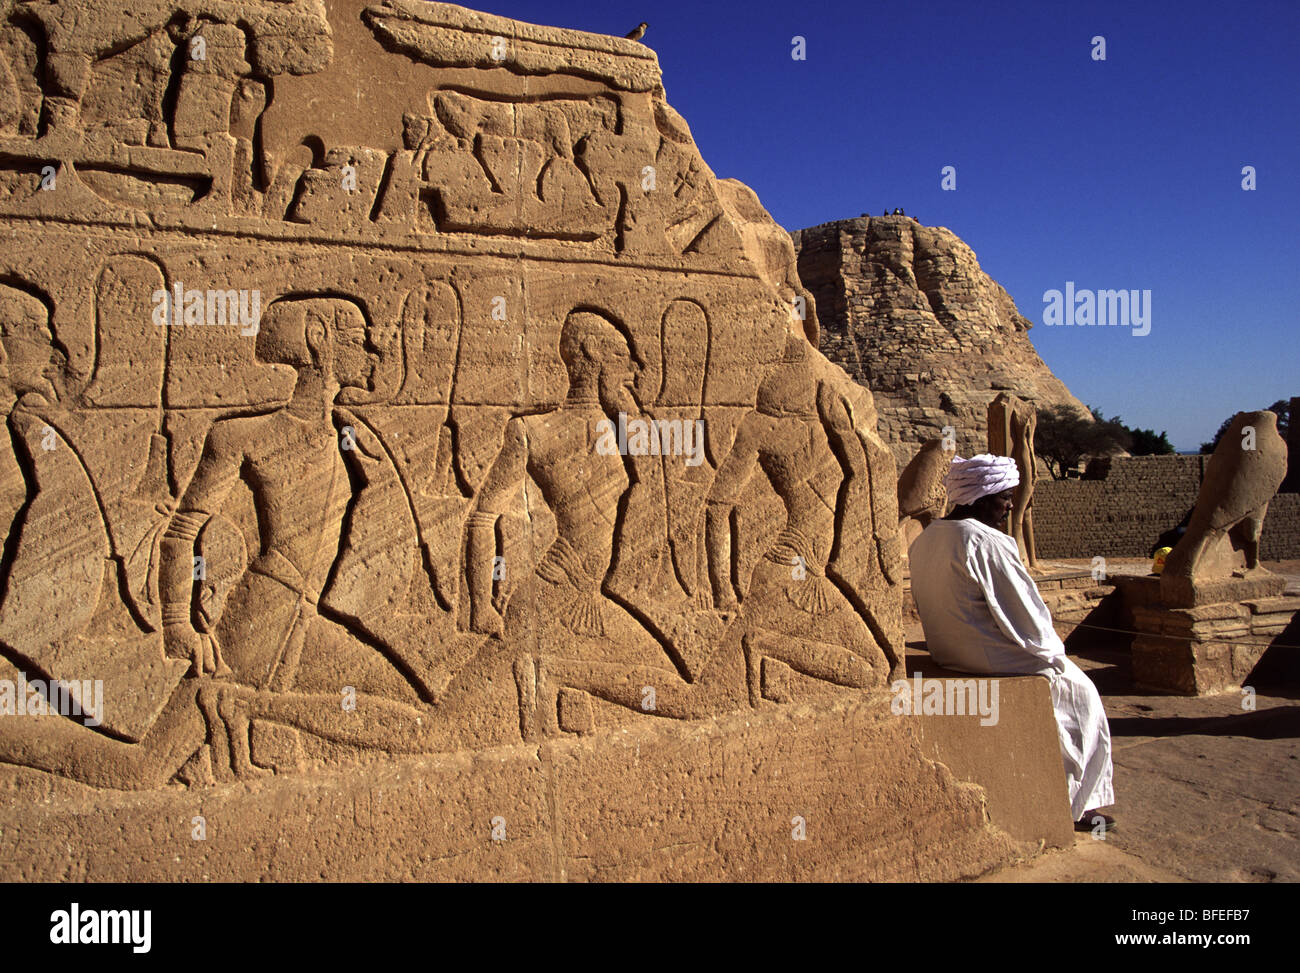 Grabados en el complejo de Abu Simbel, Egipto Foto de stock